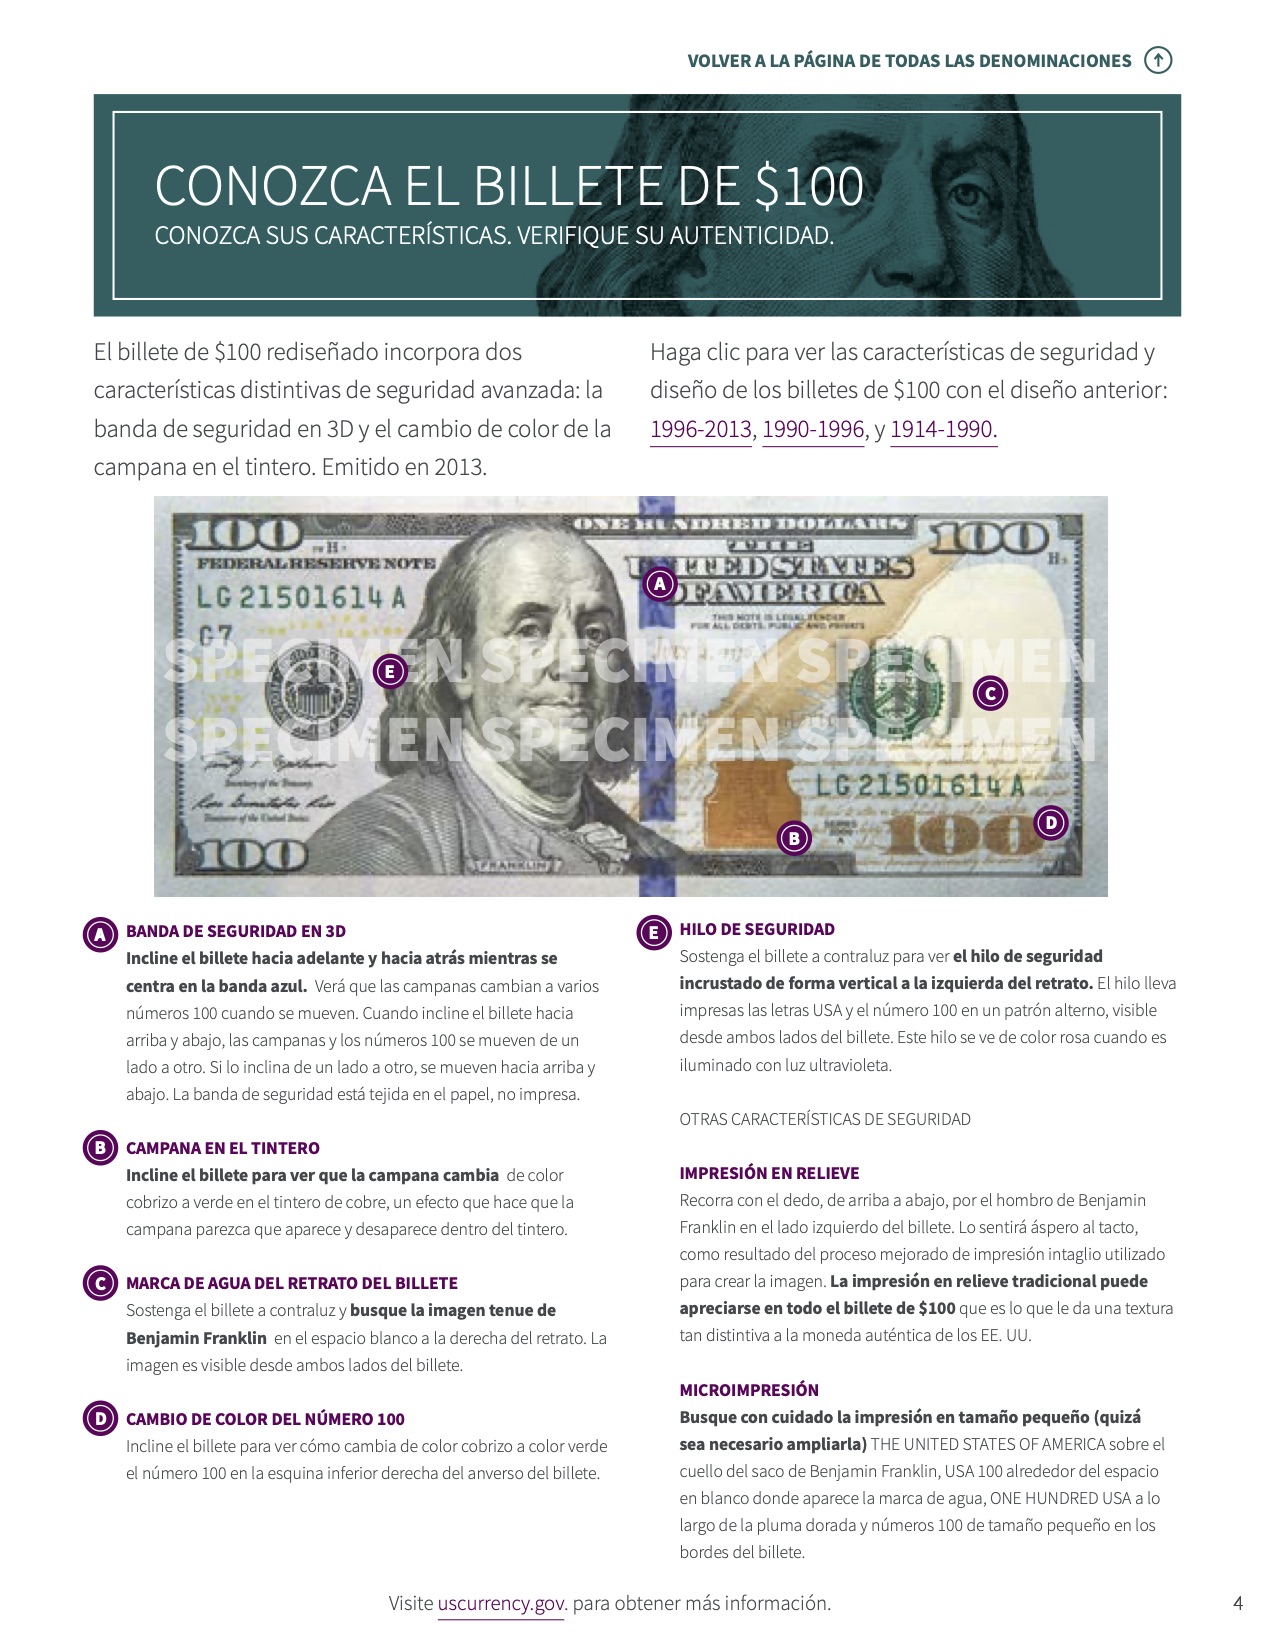 Una imagen de la página 'Conozca el billete de $100' en la Caja De Herramientas para Cajeros Bancarios que detalla varias características de seguridad y diseño de los billetes de $100 de la Reserva Federal